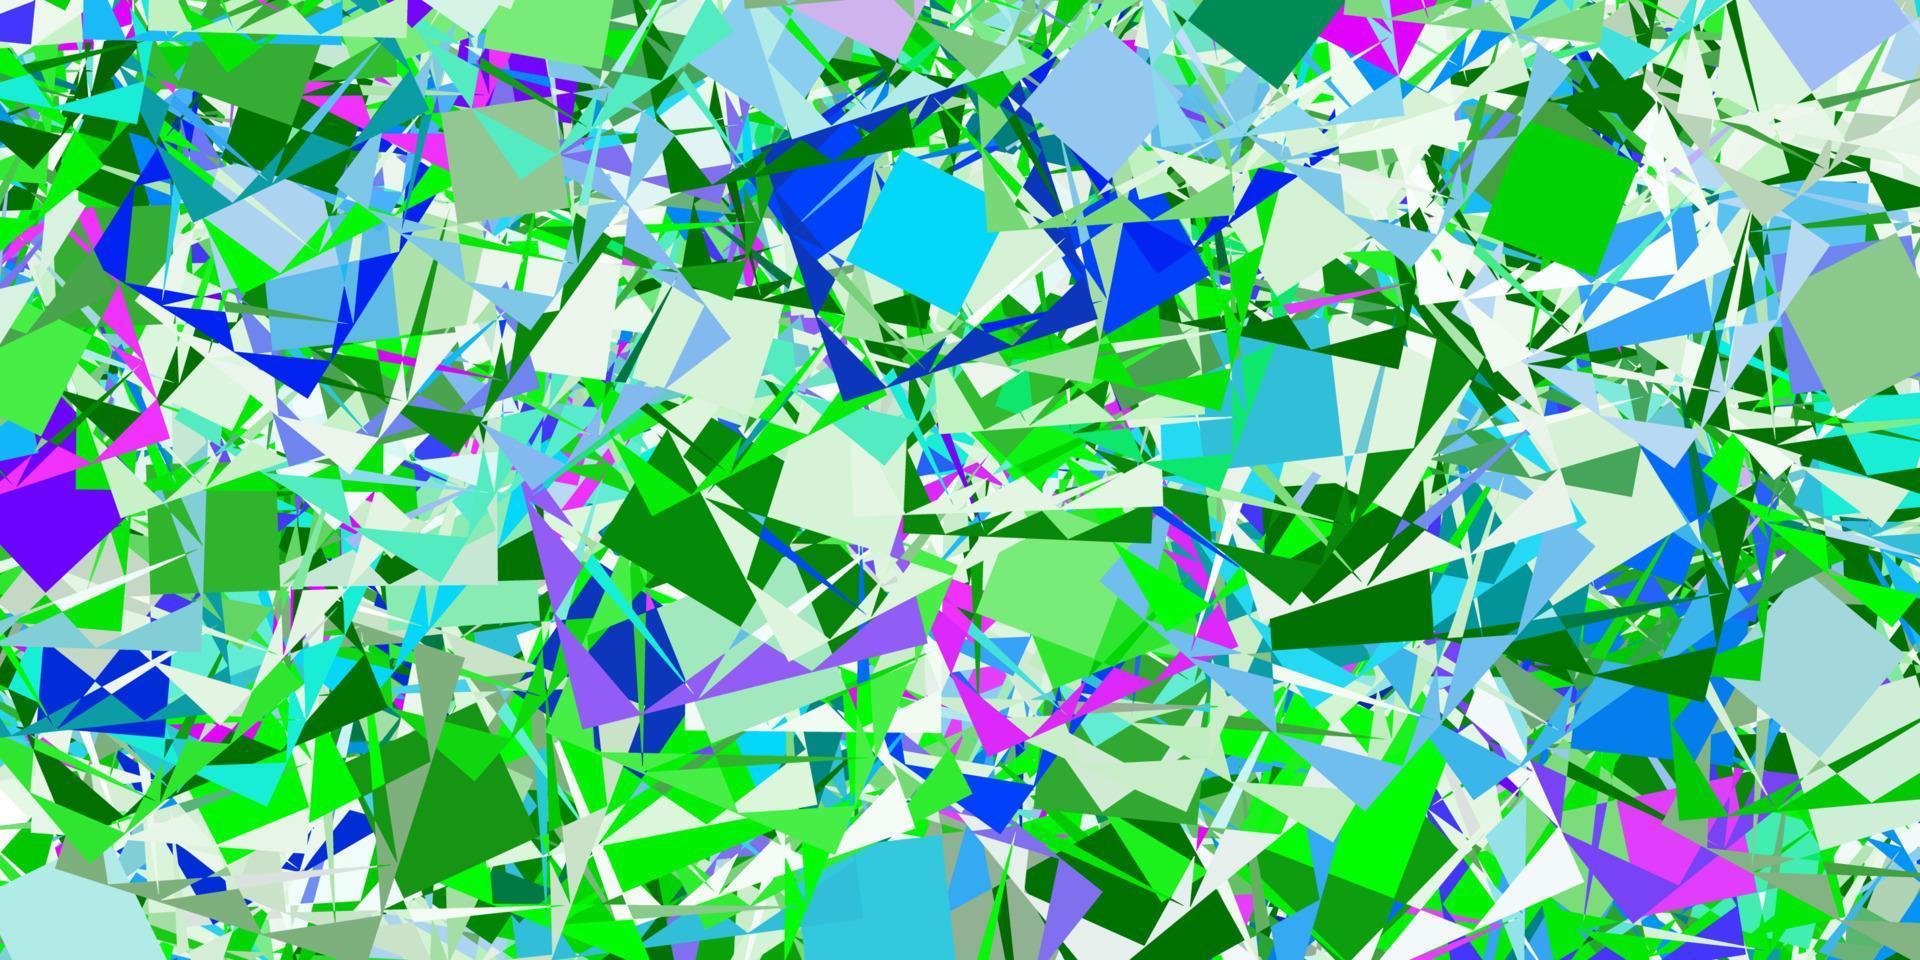 ljusrosa, grönt vektormönster med månghörniga former. vektor